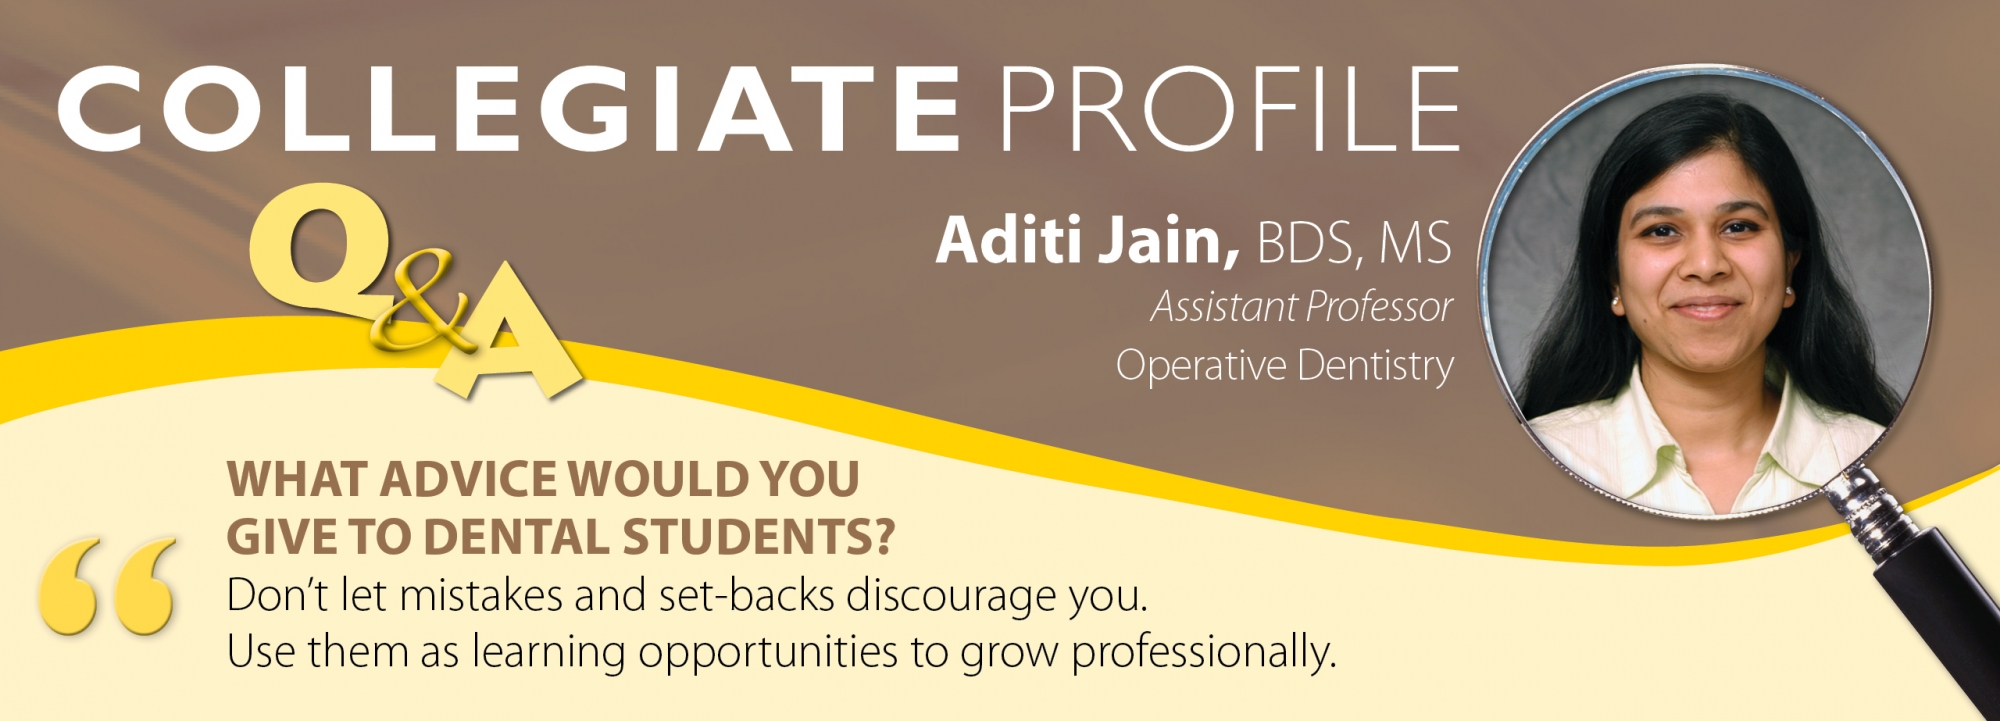 Collegiate profile December Dr. Jain